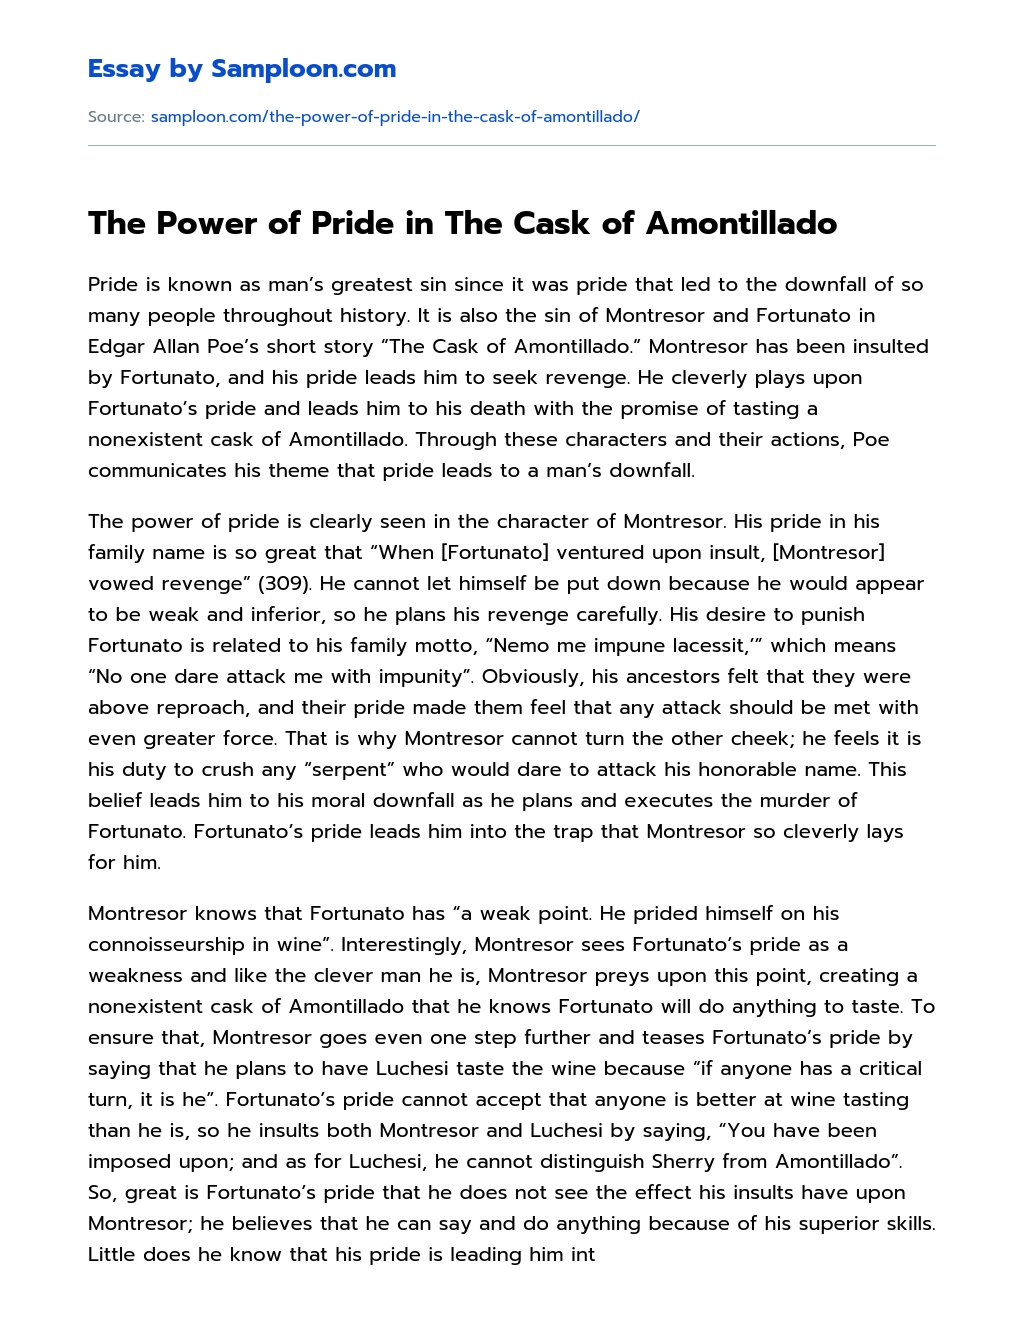 the cask of amontillado essay thesis